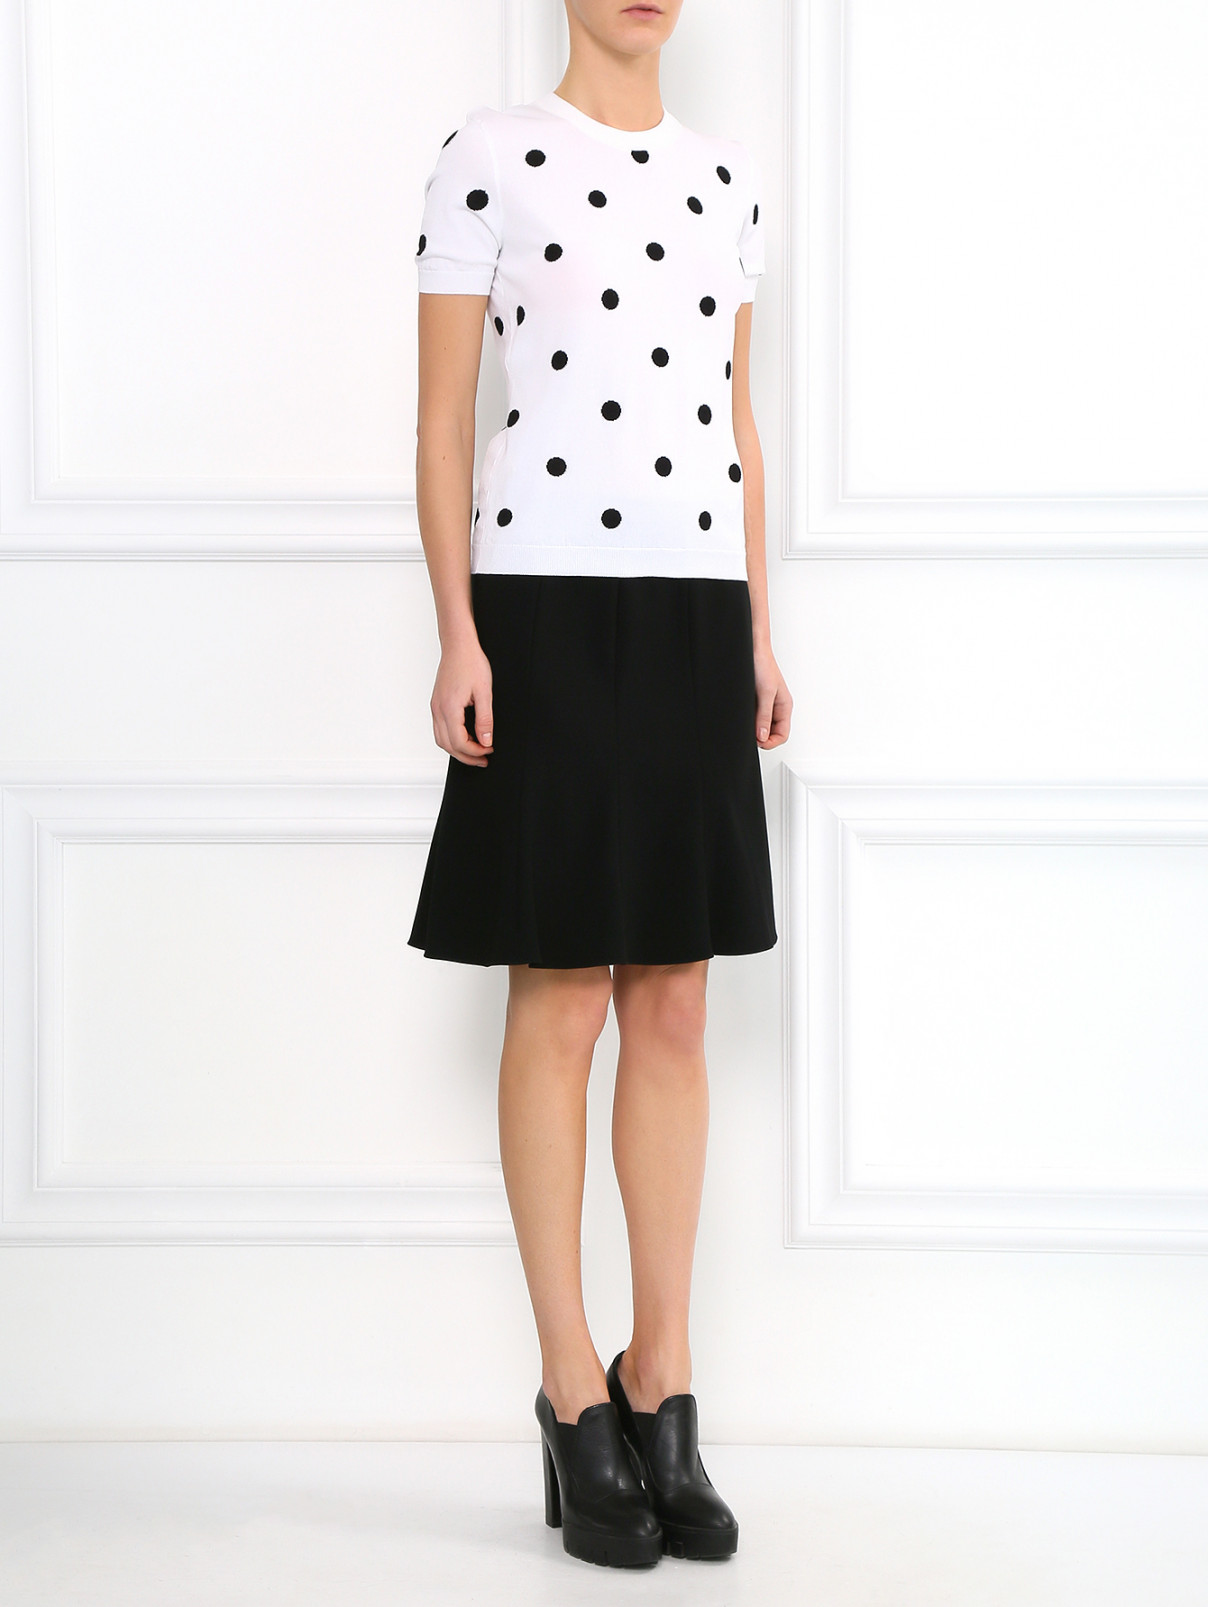 Классическая юбка-мини Moschino Cheap&Chic  –  Модель Общий вид  – Цвет:  Черный